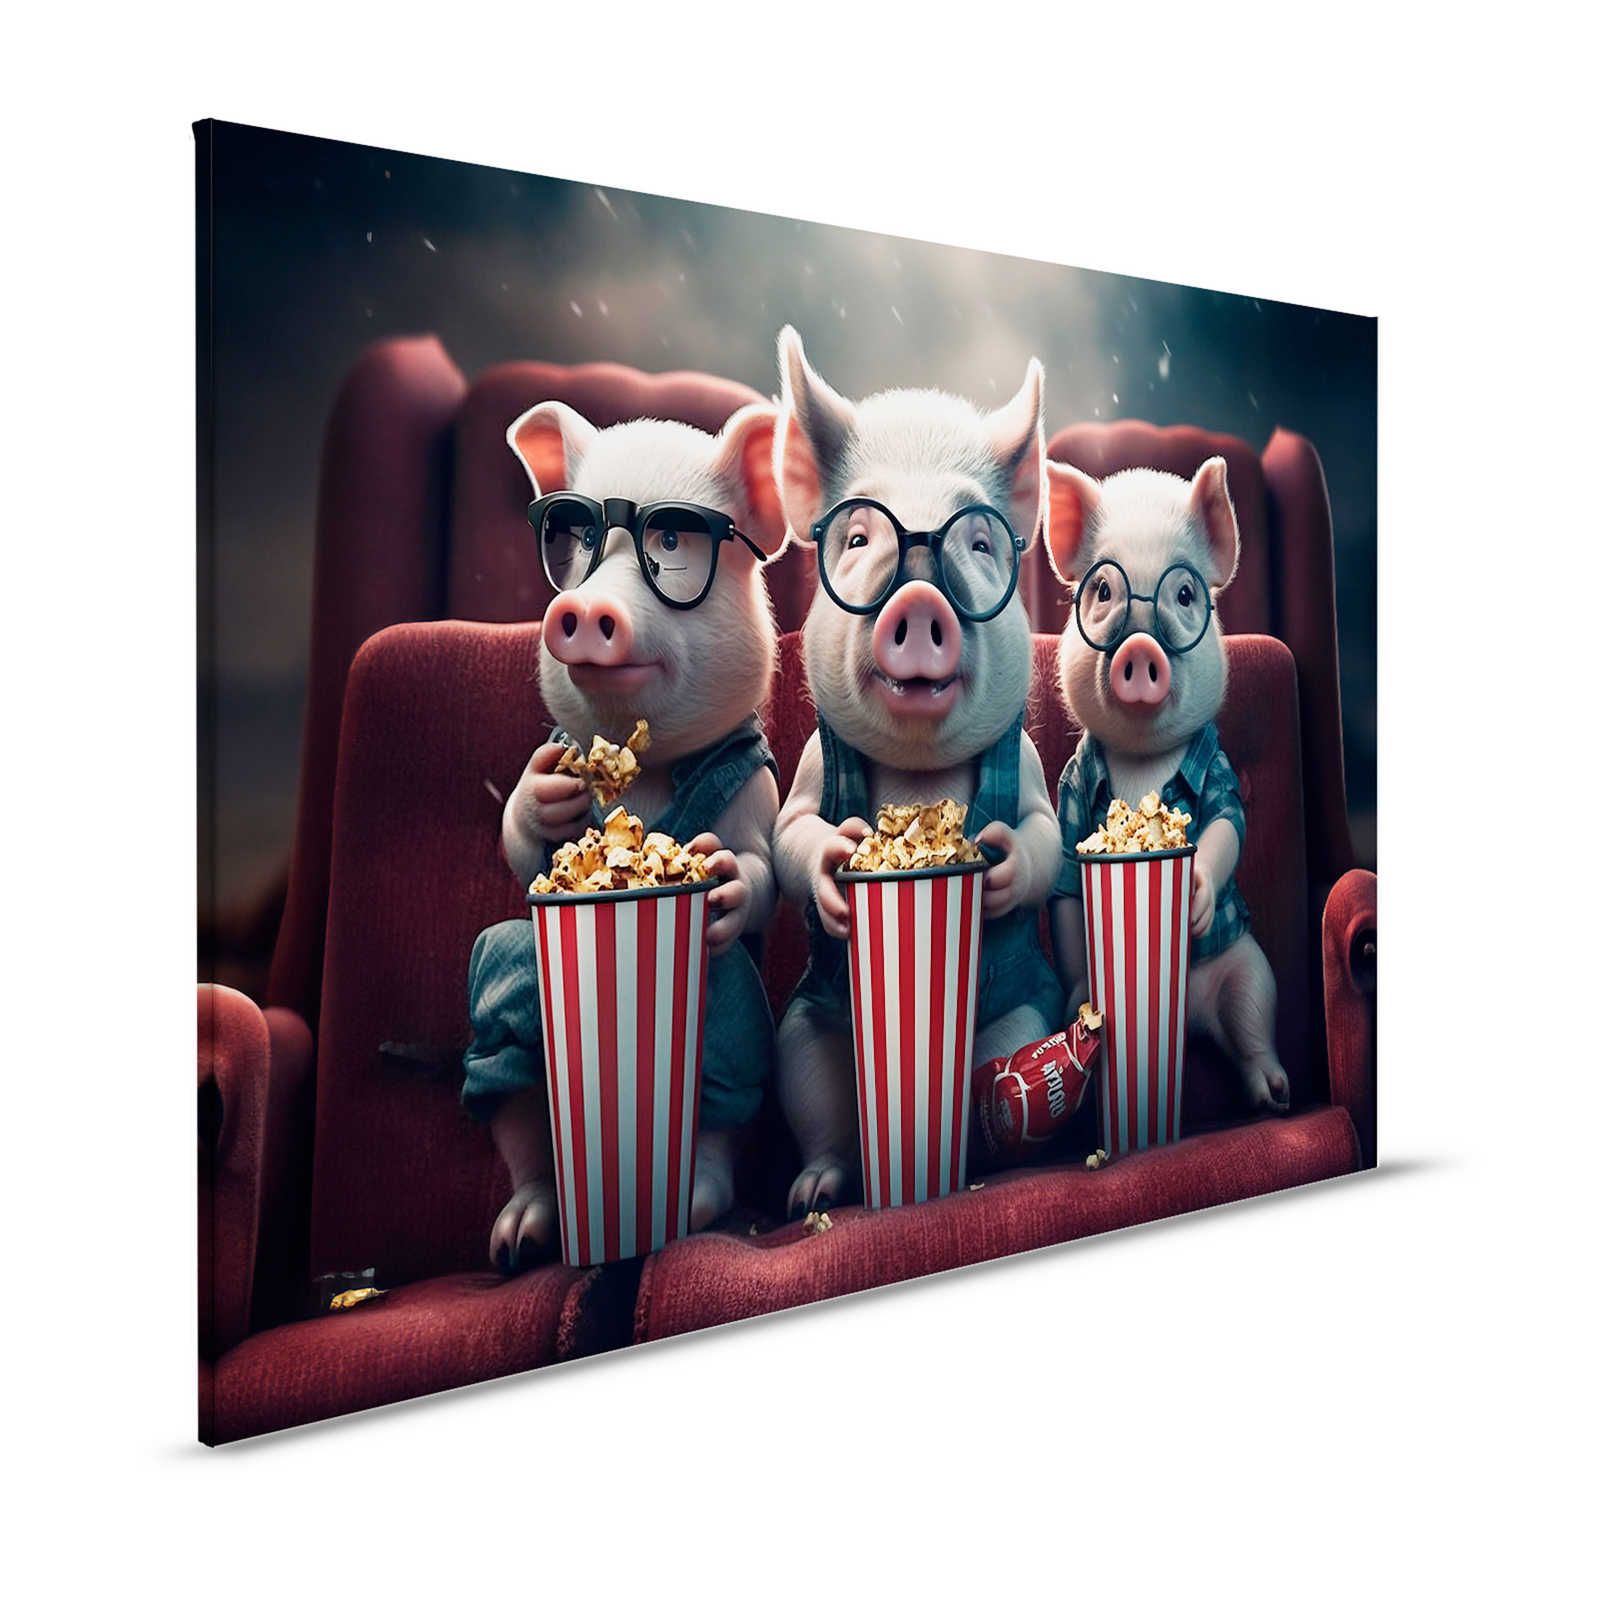 KI Canvas schilderij »popcorn varkens« - 120 cm x 80 cm
